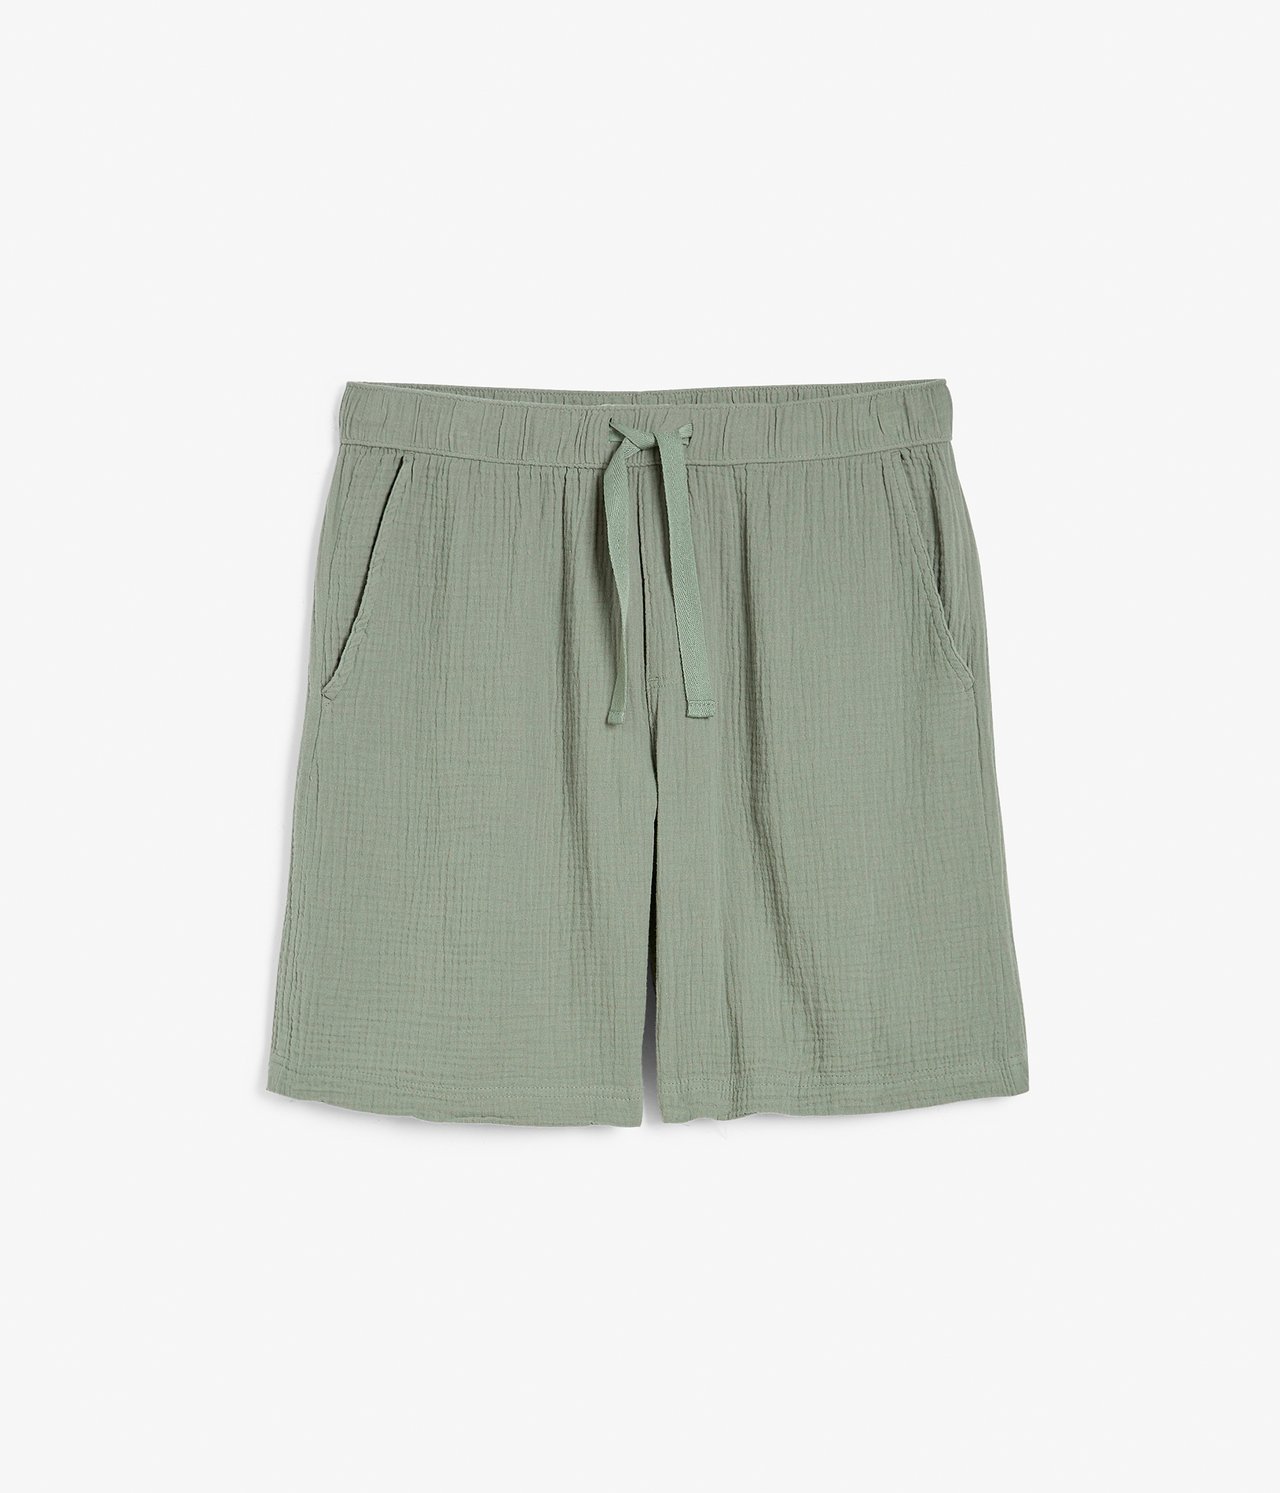 Shorts i rynkete bomull - Grønn - 4